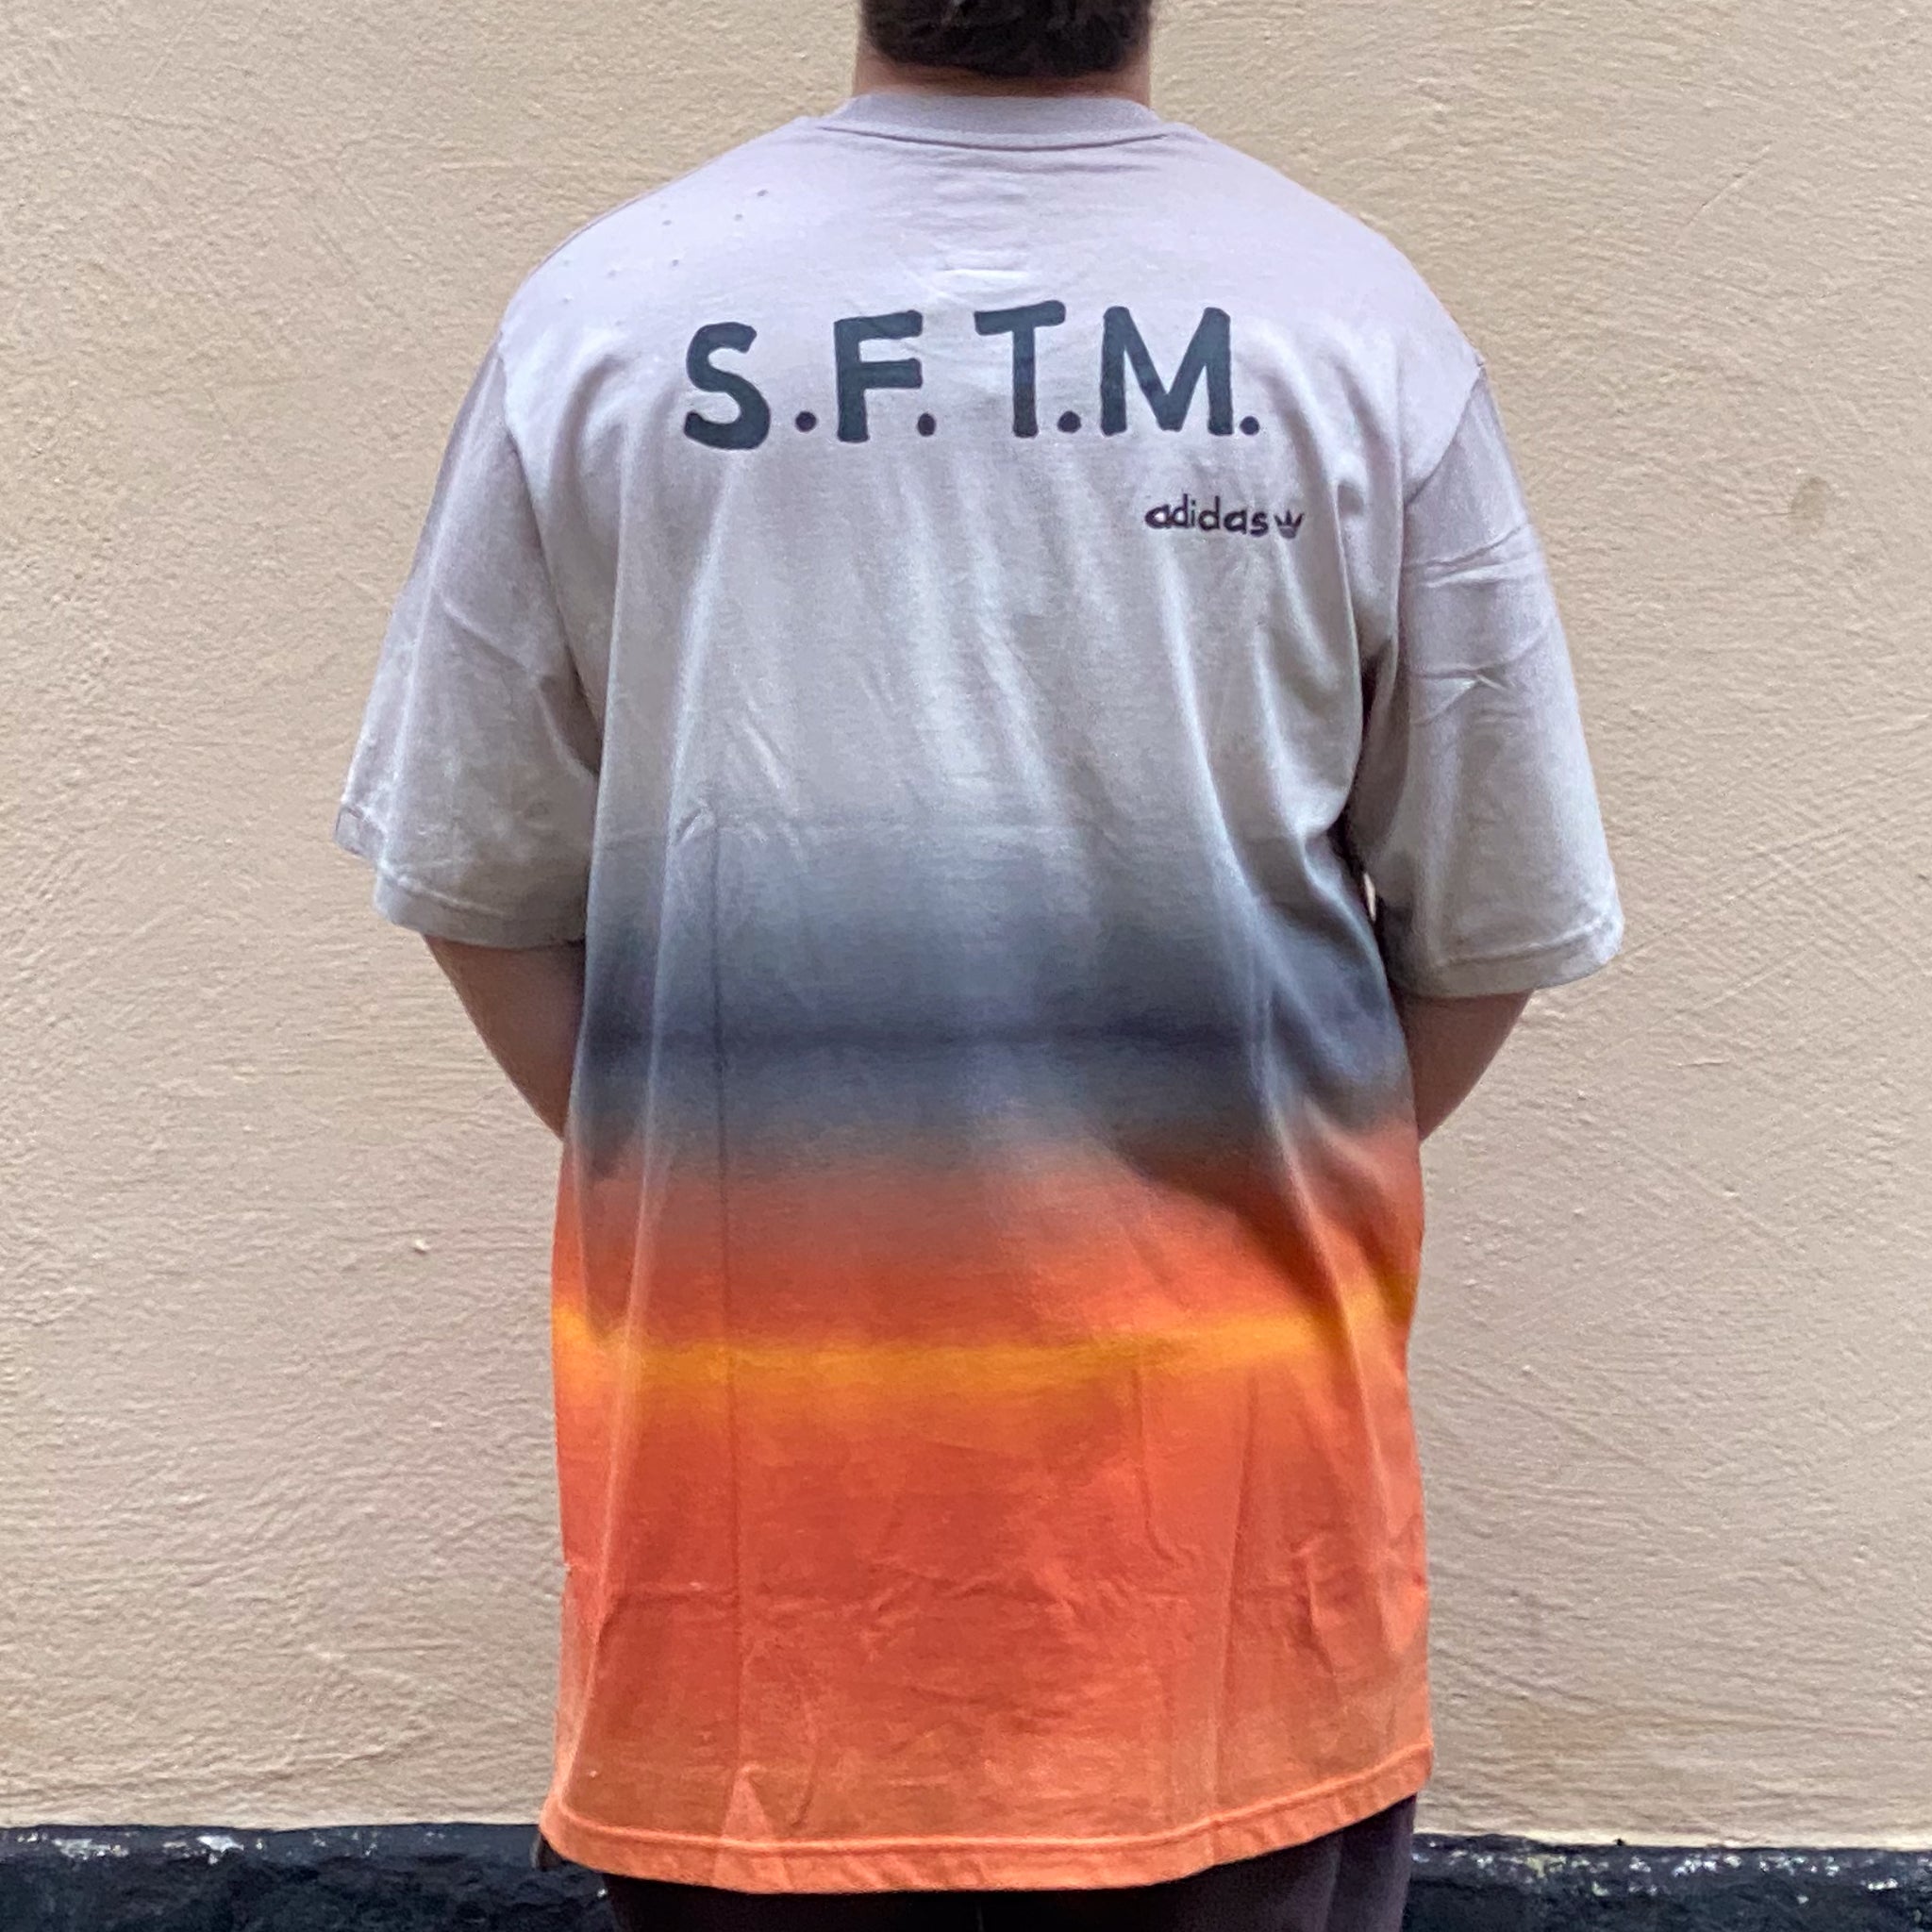 Adidas SFTM Tshirt